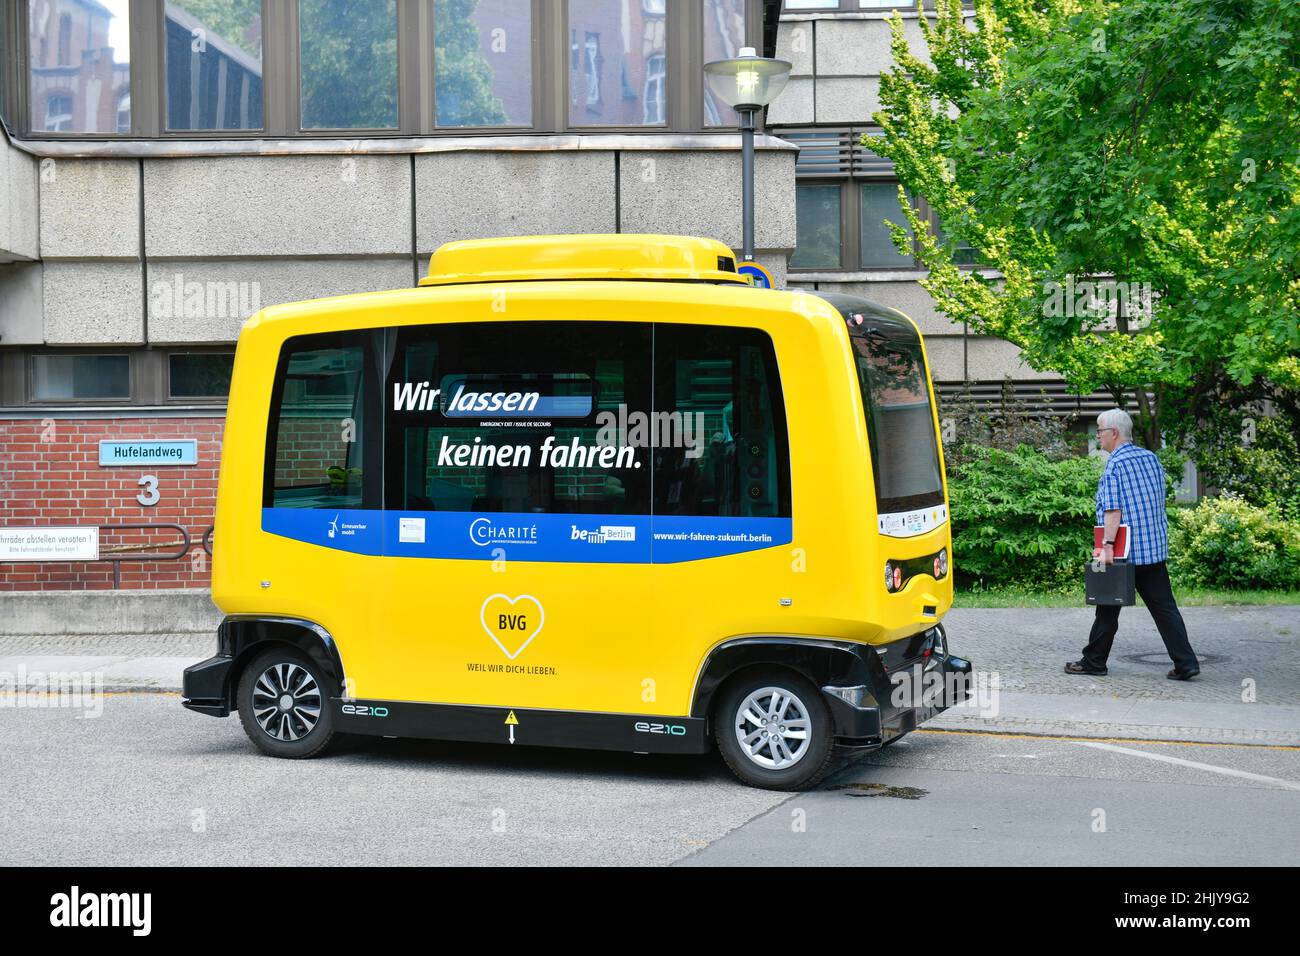 Autonomer Minibus der BVG, Charite, Luisenstraße, Mitte, Berlin, Deutschland Stock Photo